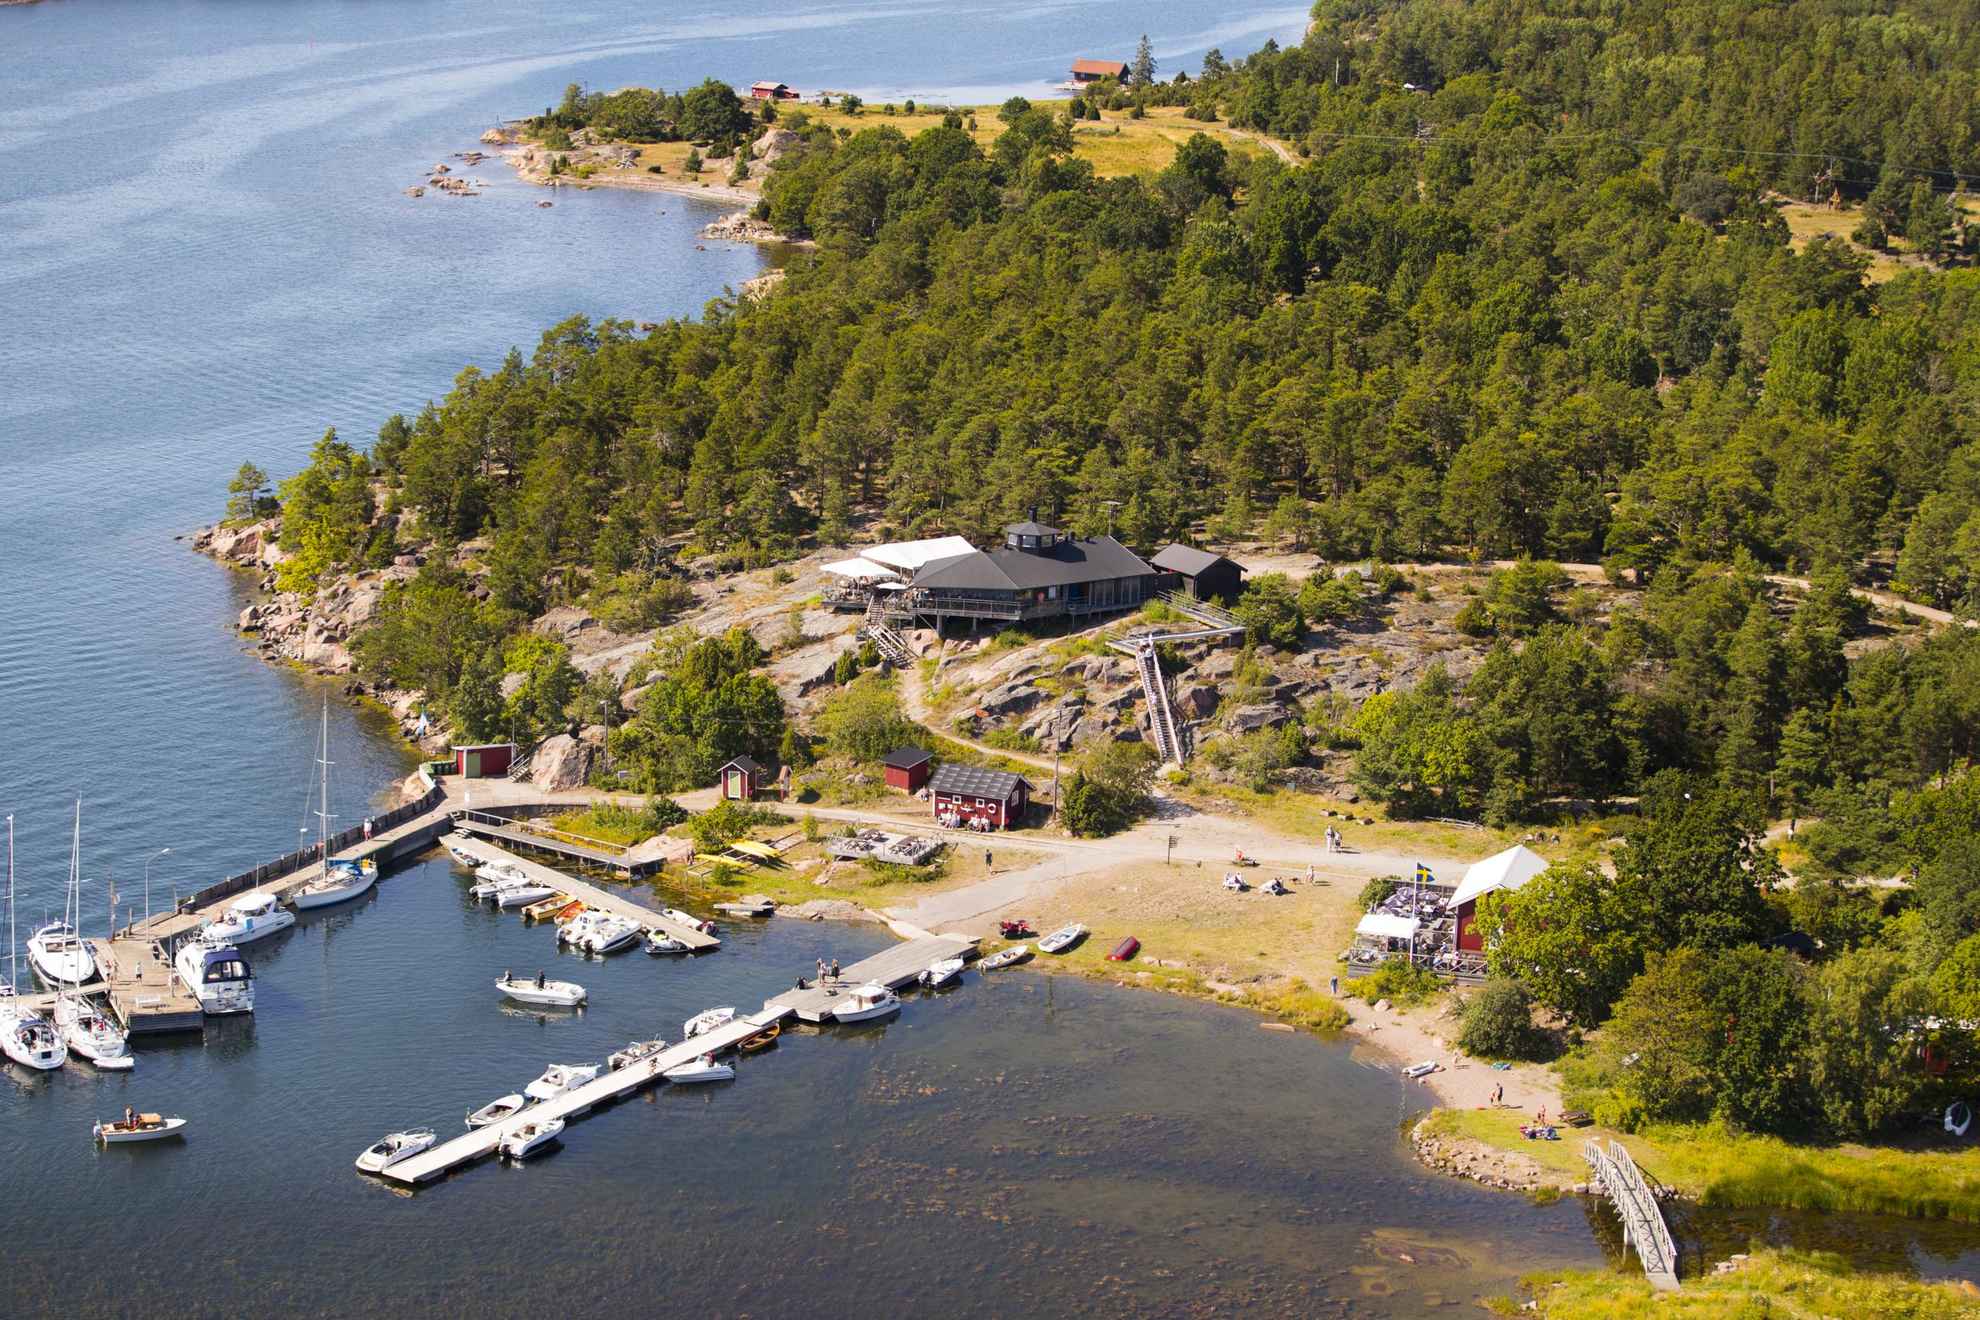 Aerial view of Idö Skärgårdskrog in Tjust archipelago, Småland.